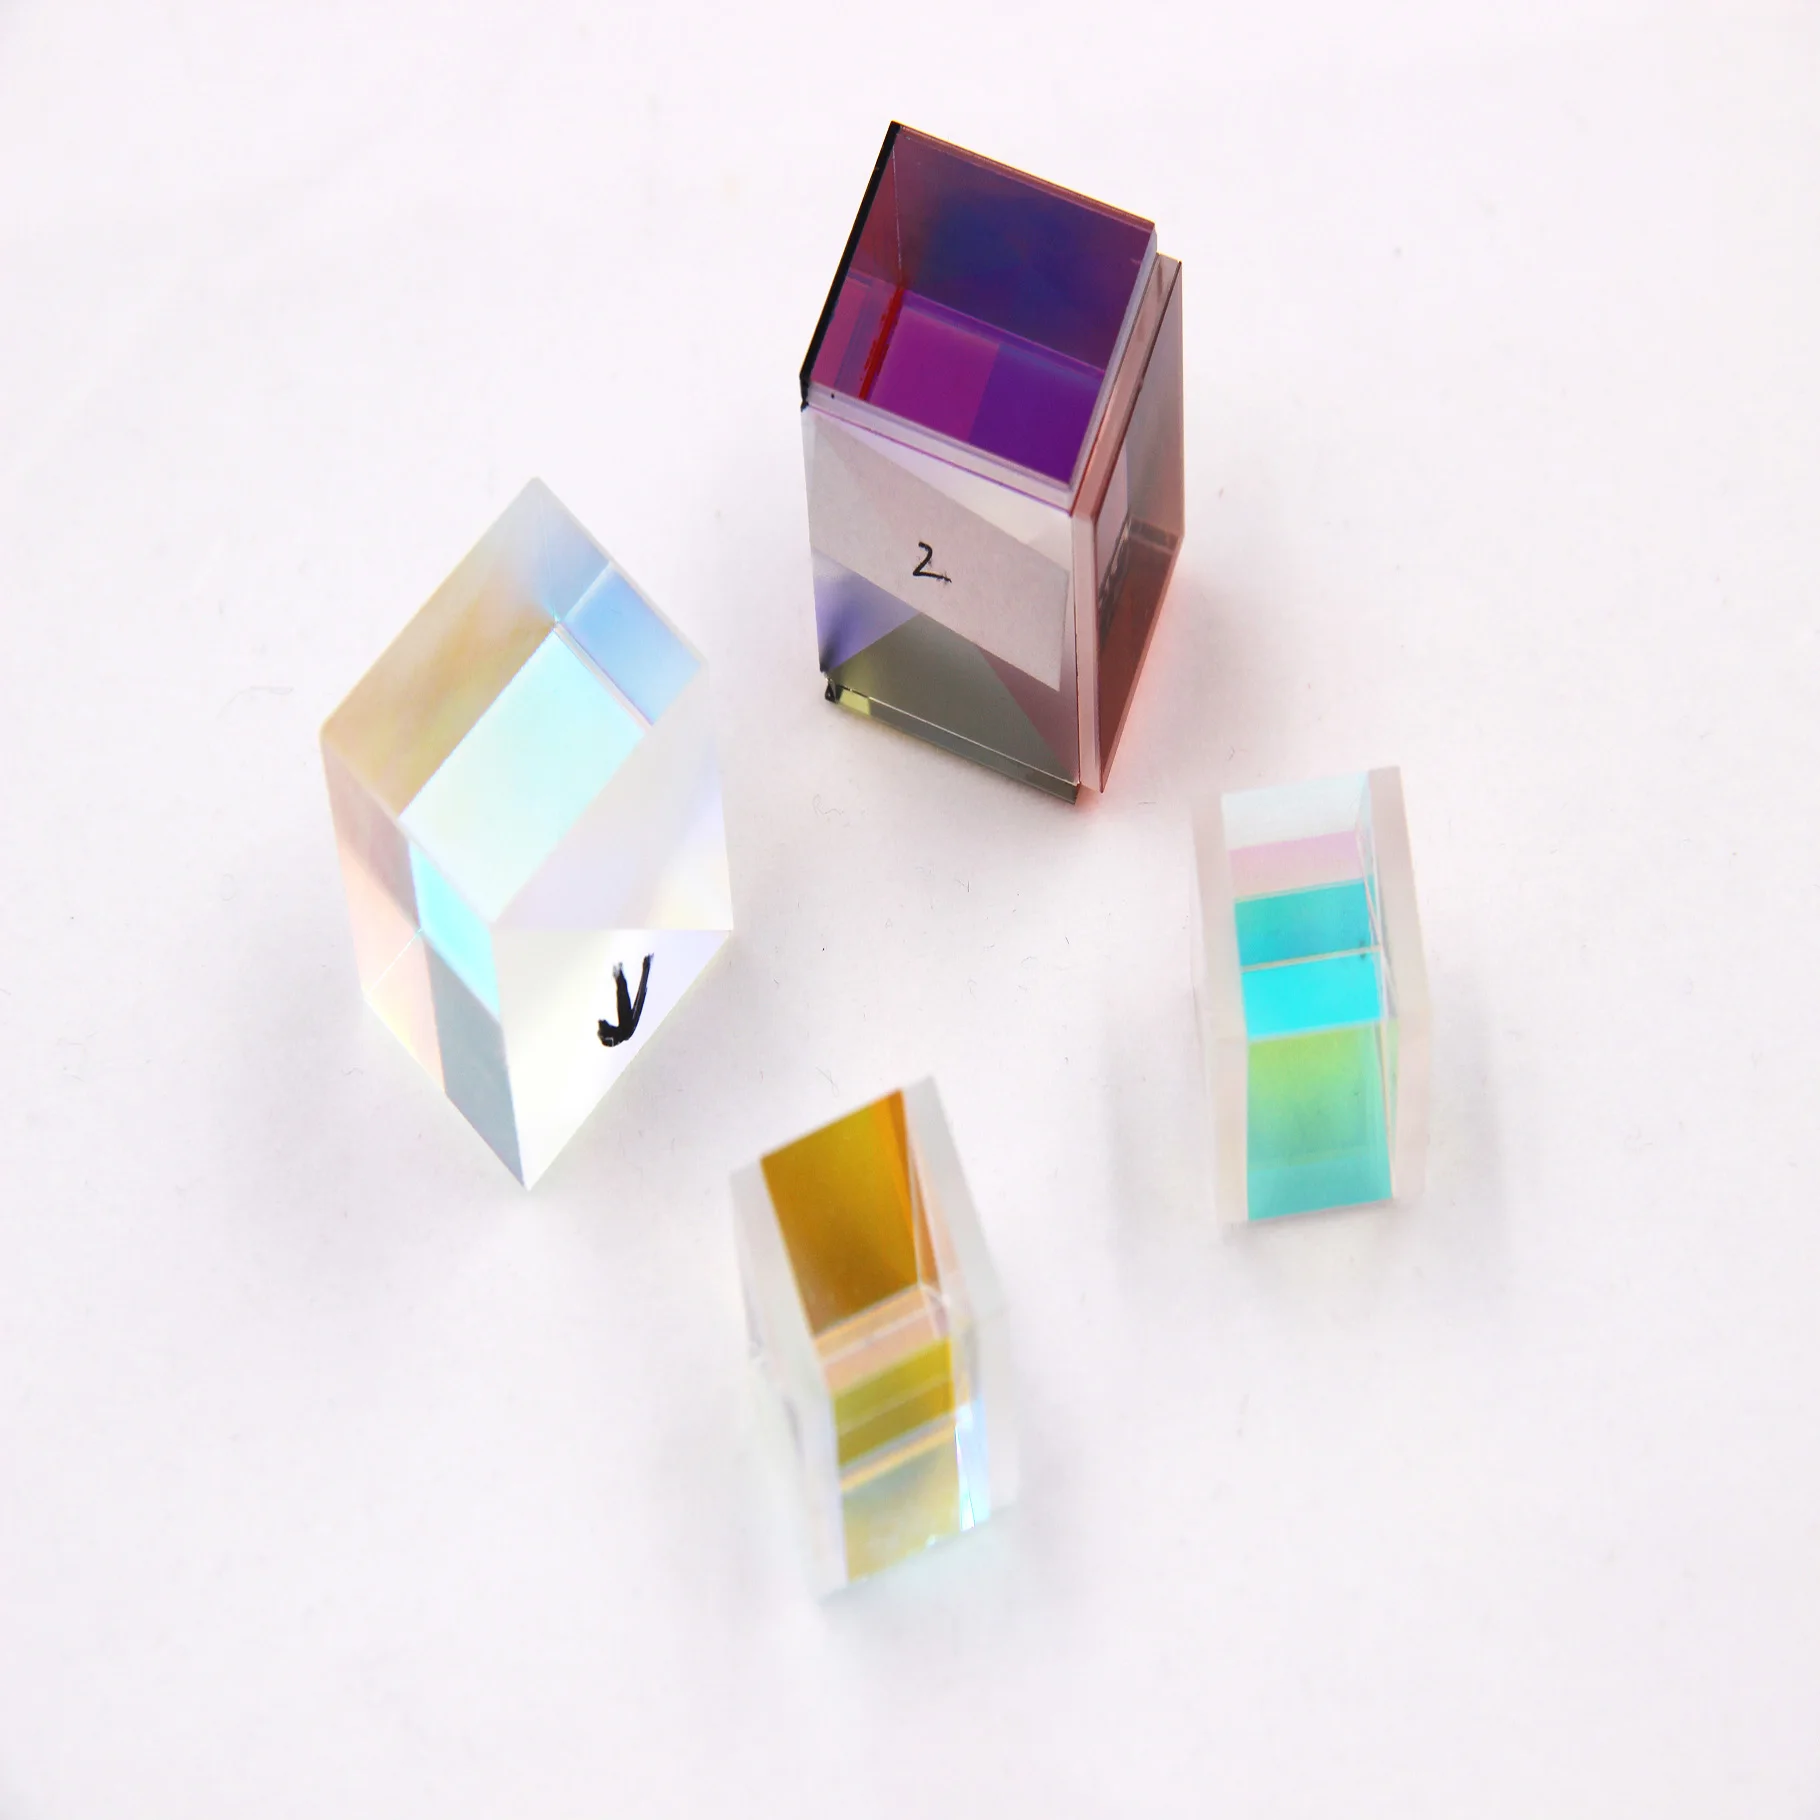 Poplour x-cube prism divergent rainbow color for photo studio